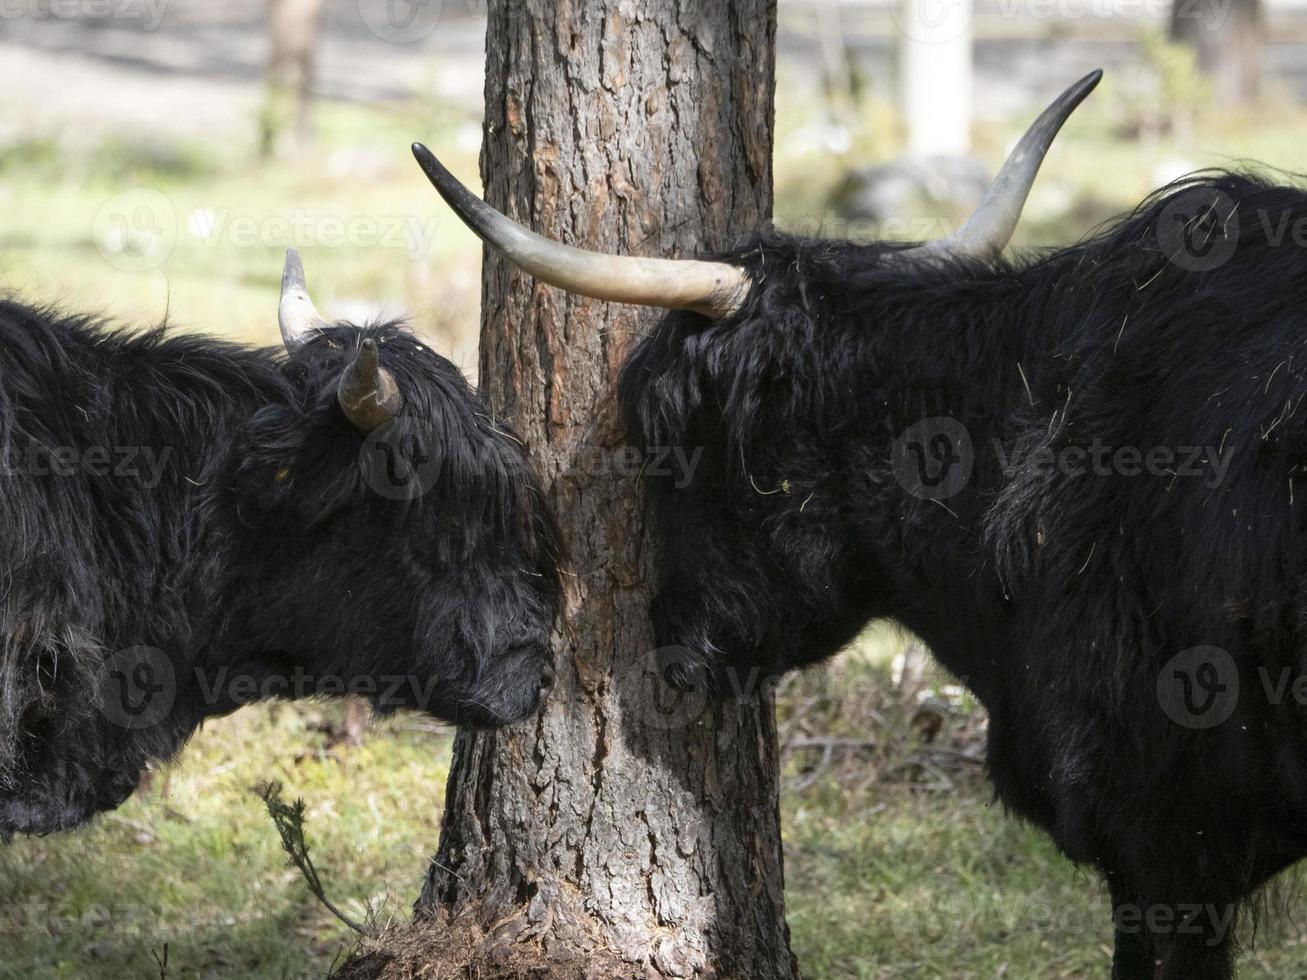 Highlander scotland hairy cow yak detail photo